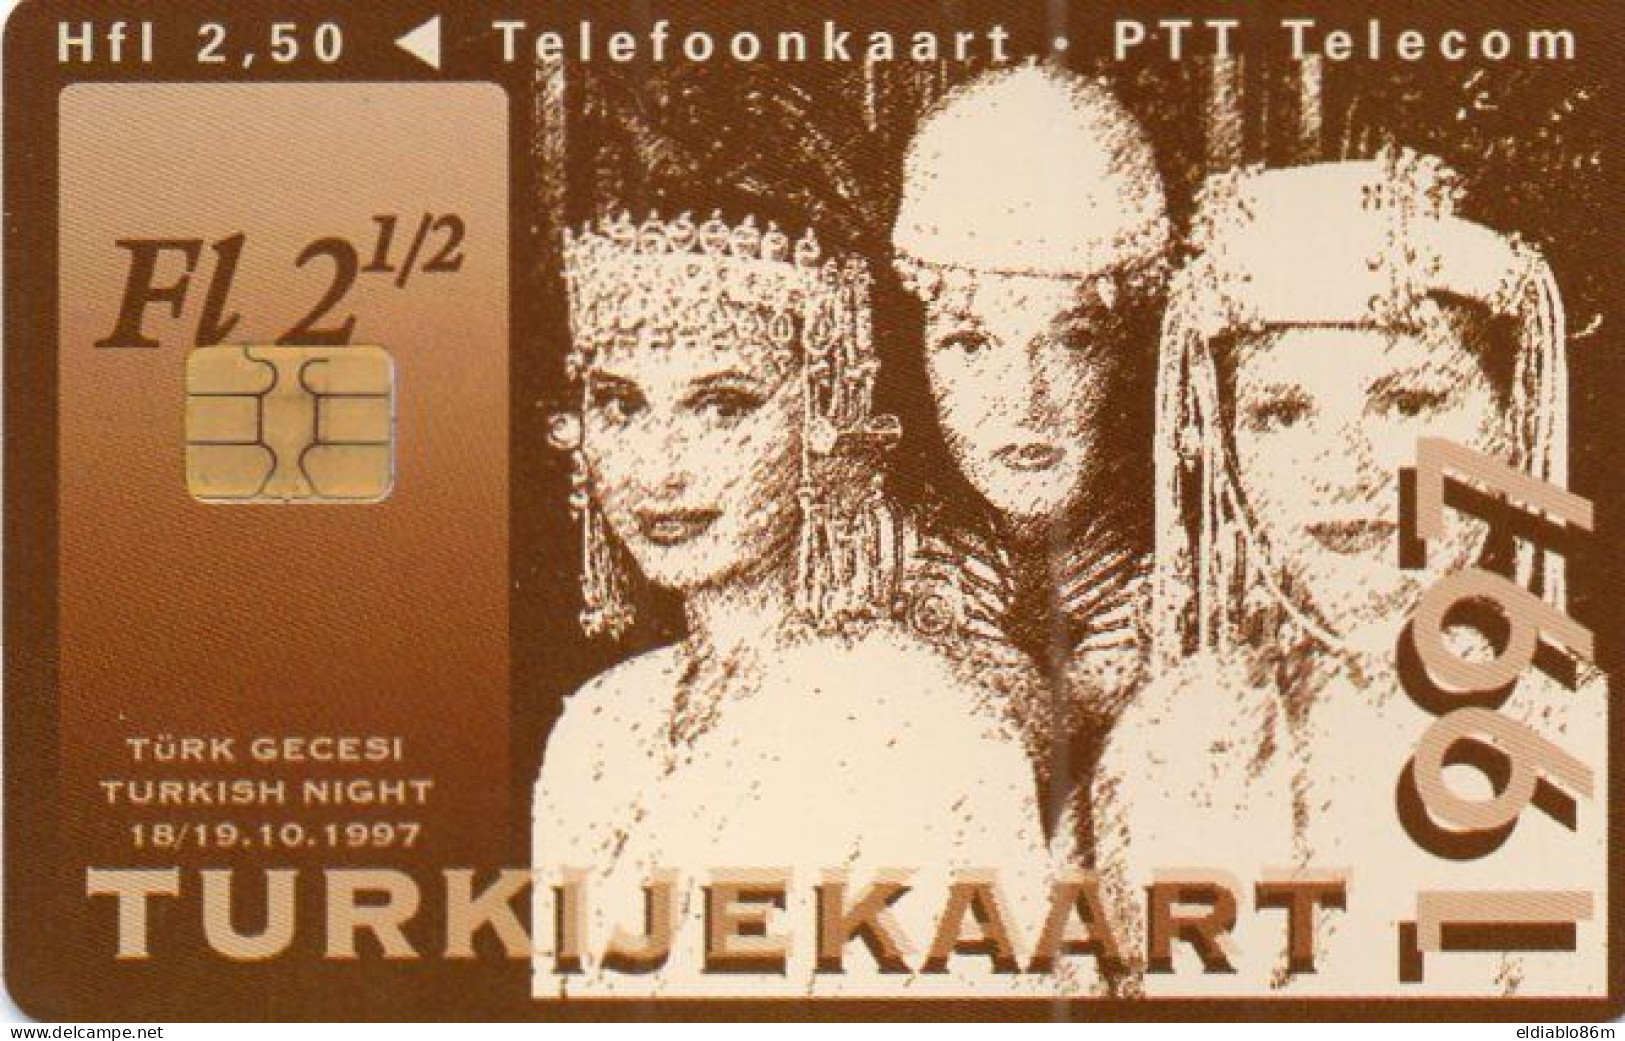 NETHERLANDS - CHIP CARD - CKD114 - TURKIJEKAART - TURKISH NIGHT - WOMAN - Openbaar